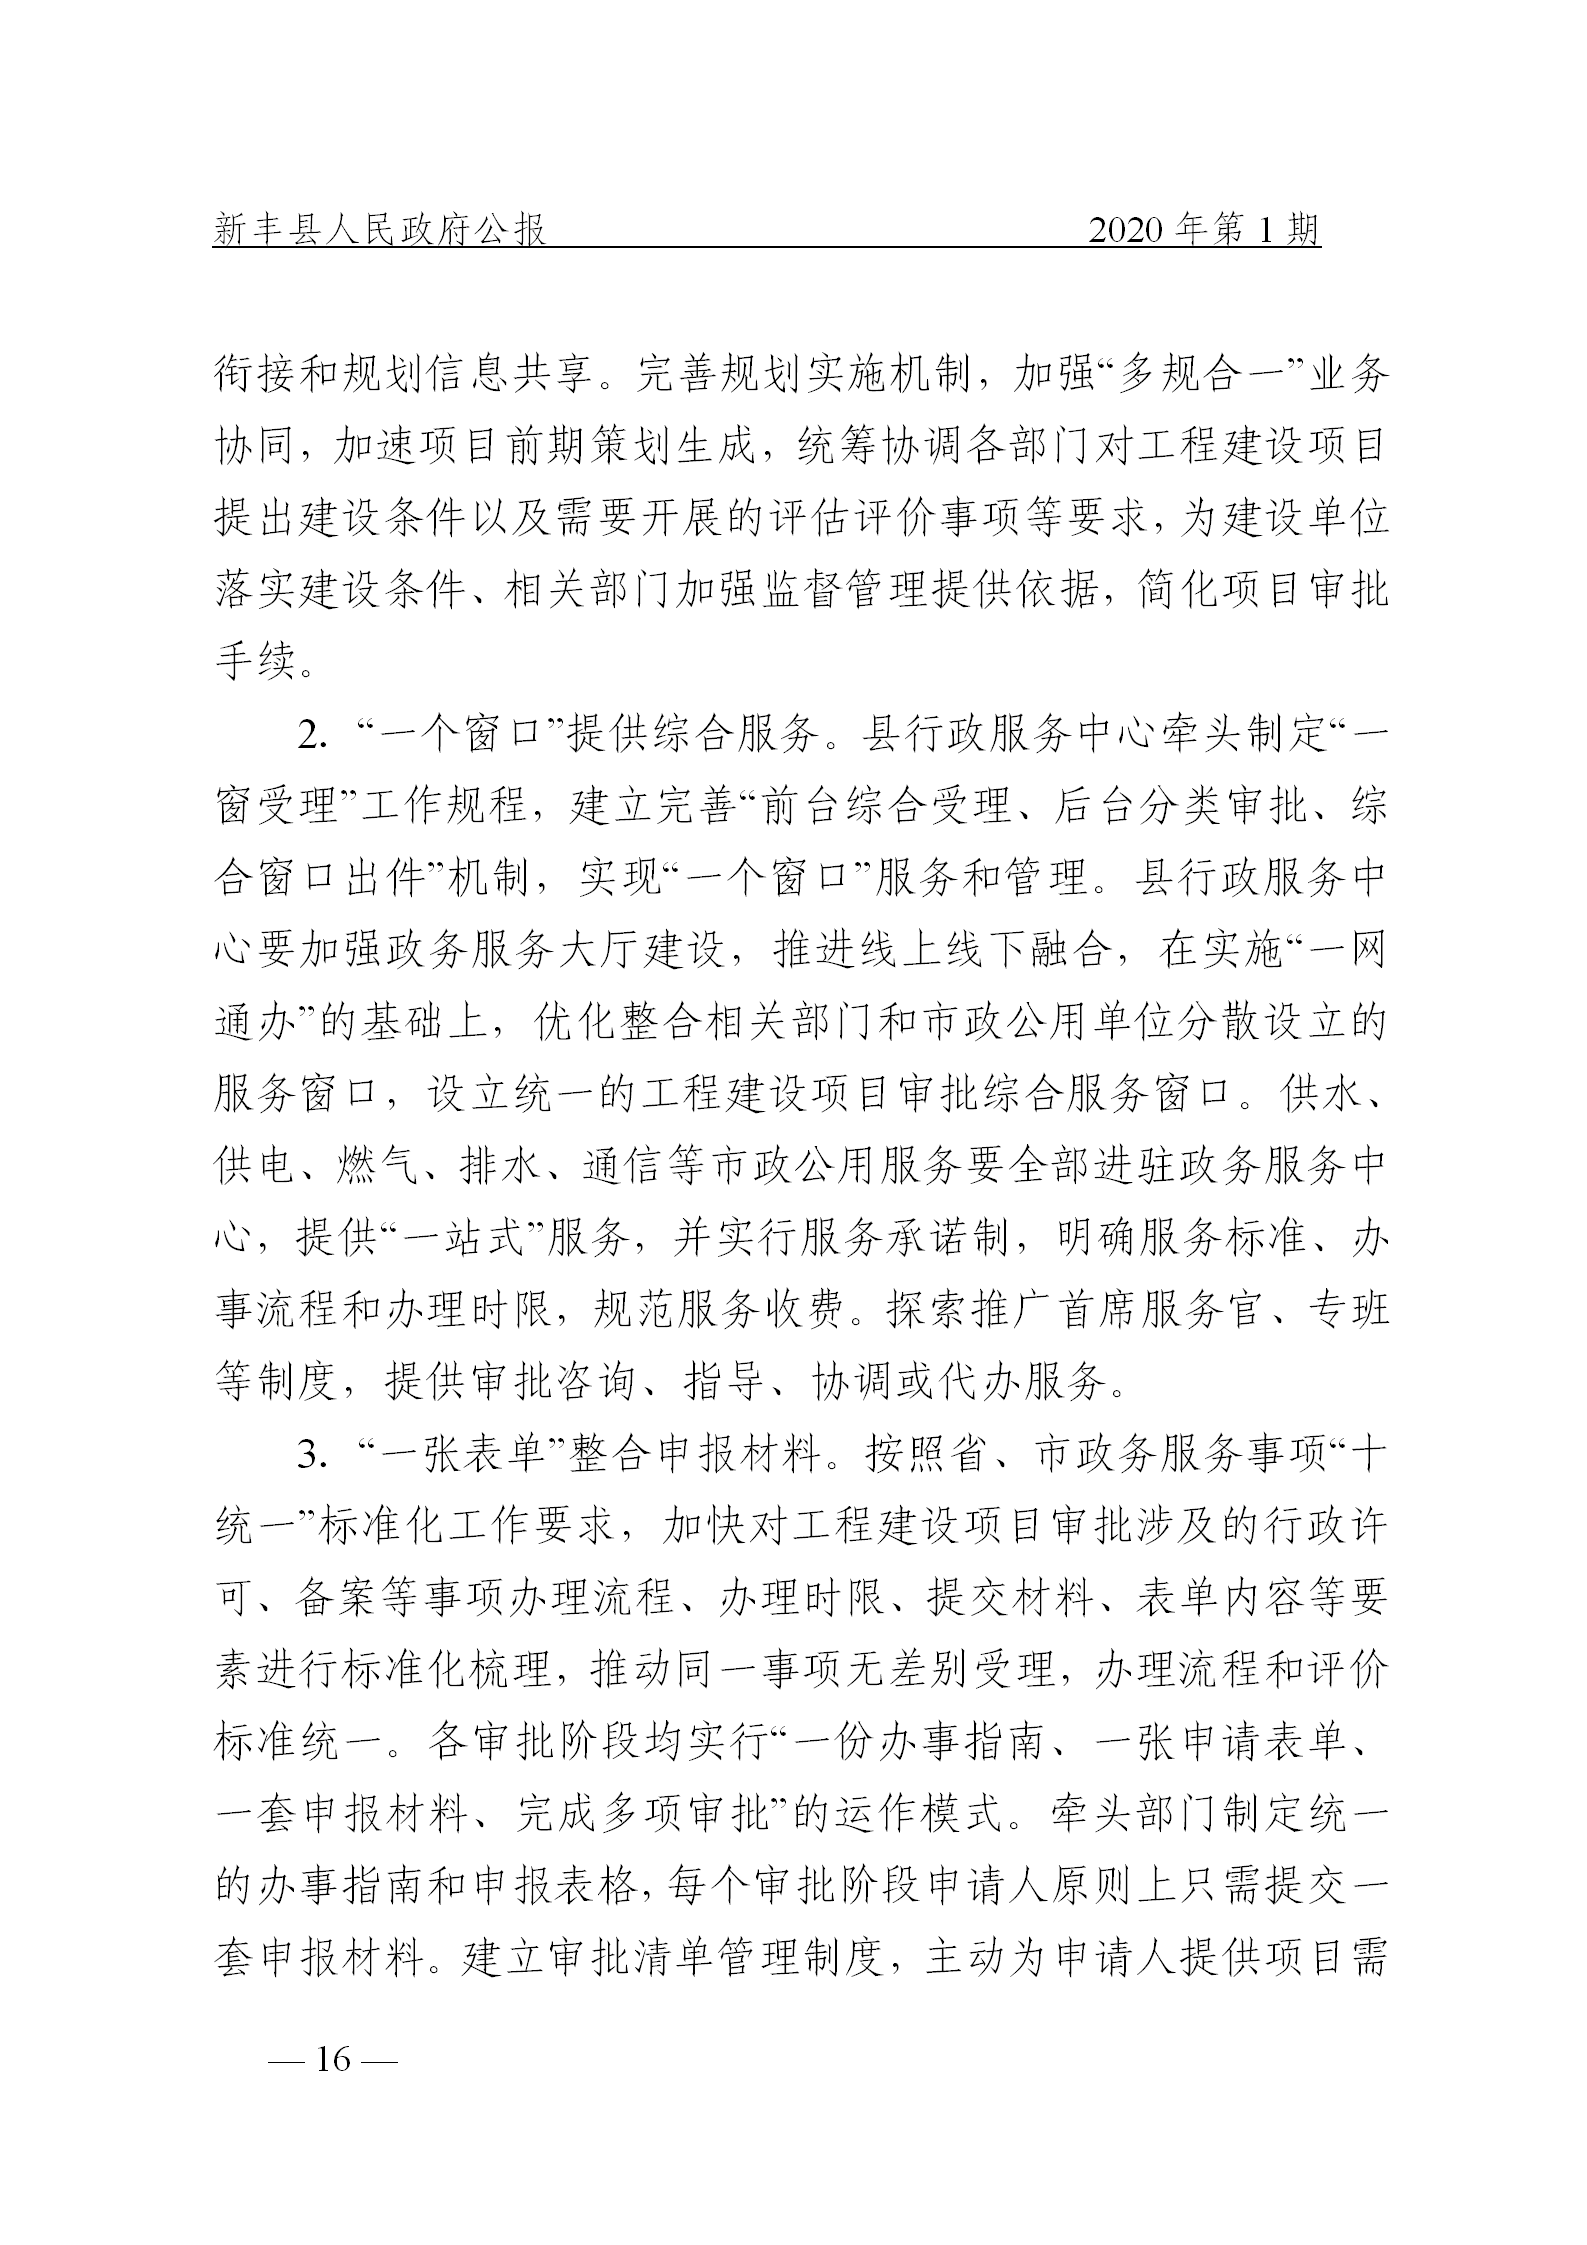 《新丰县人民政府公报》2020年第1期(1)_16.png